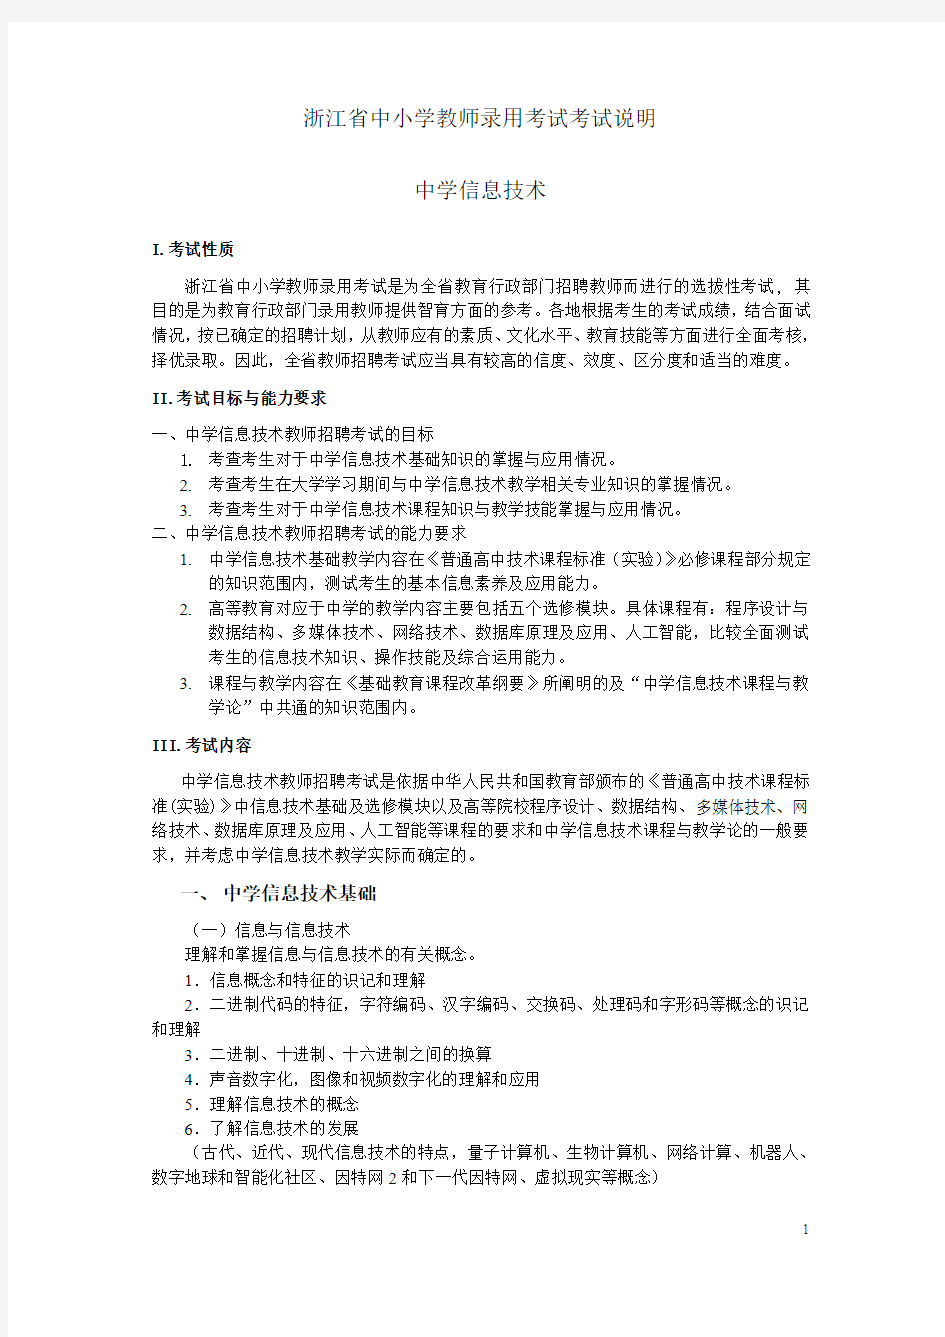 2009年浙江教师录用考试考试说明-浙江教育考试院